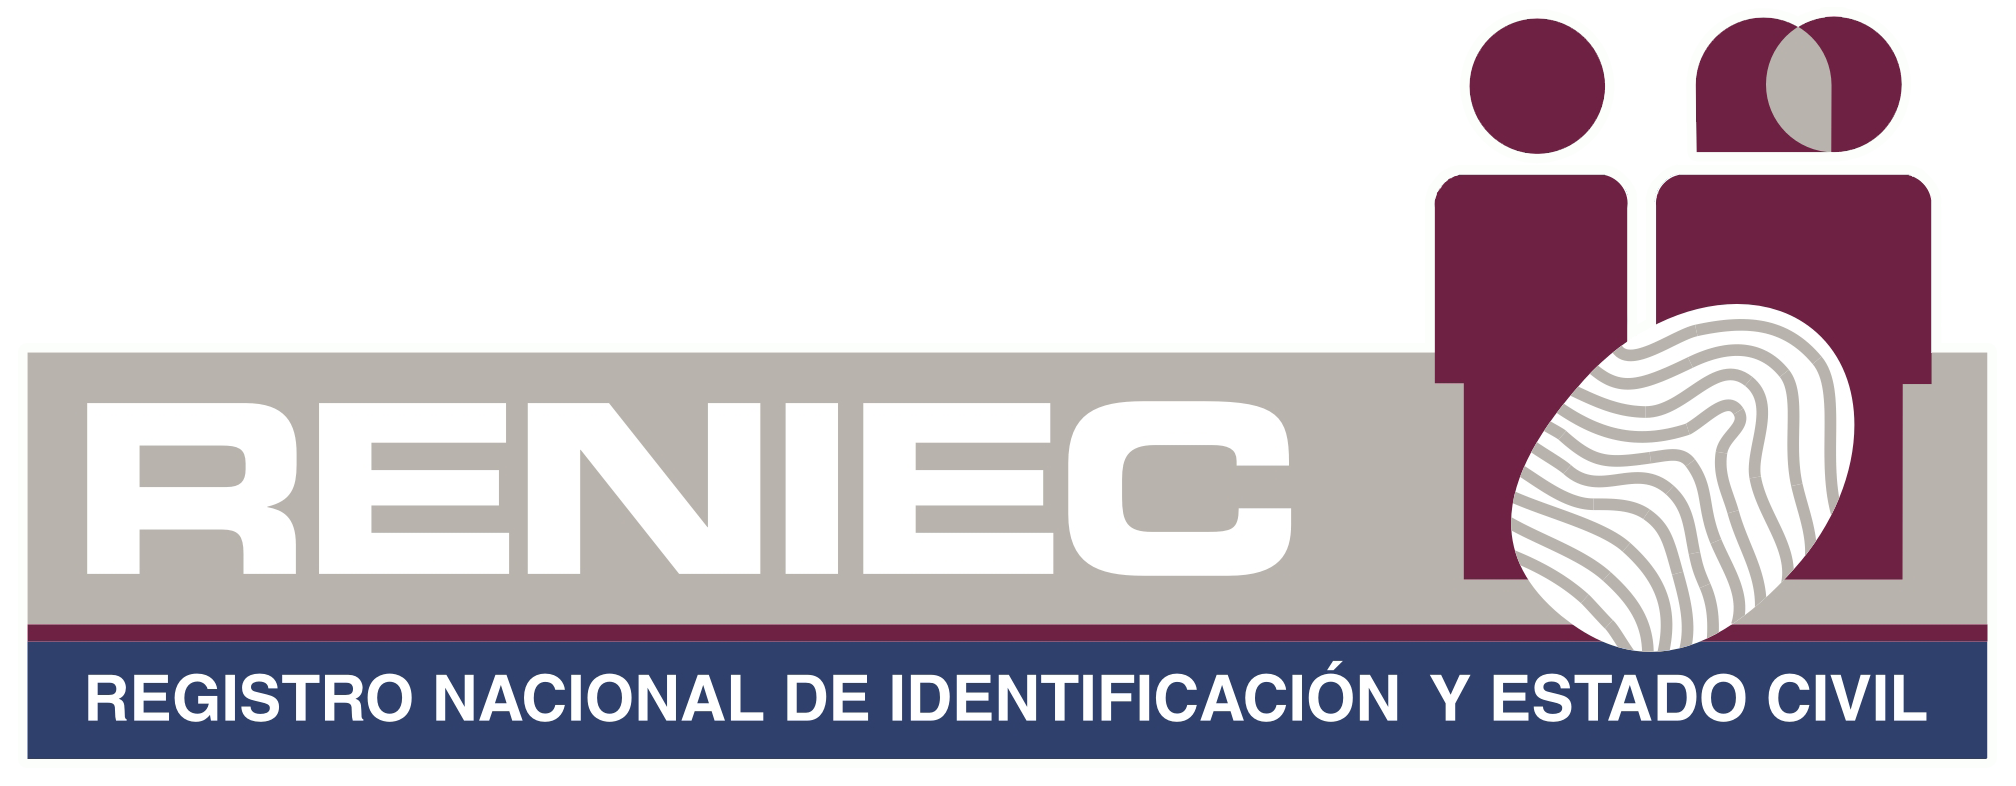 Registro Nacional de Identificación y Estado Civil